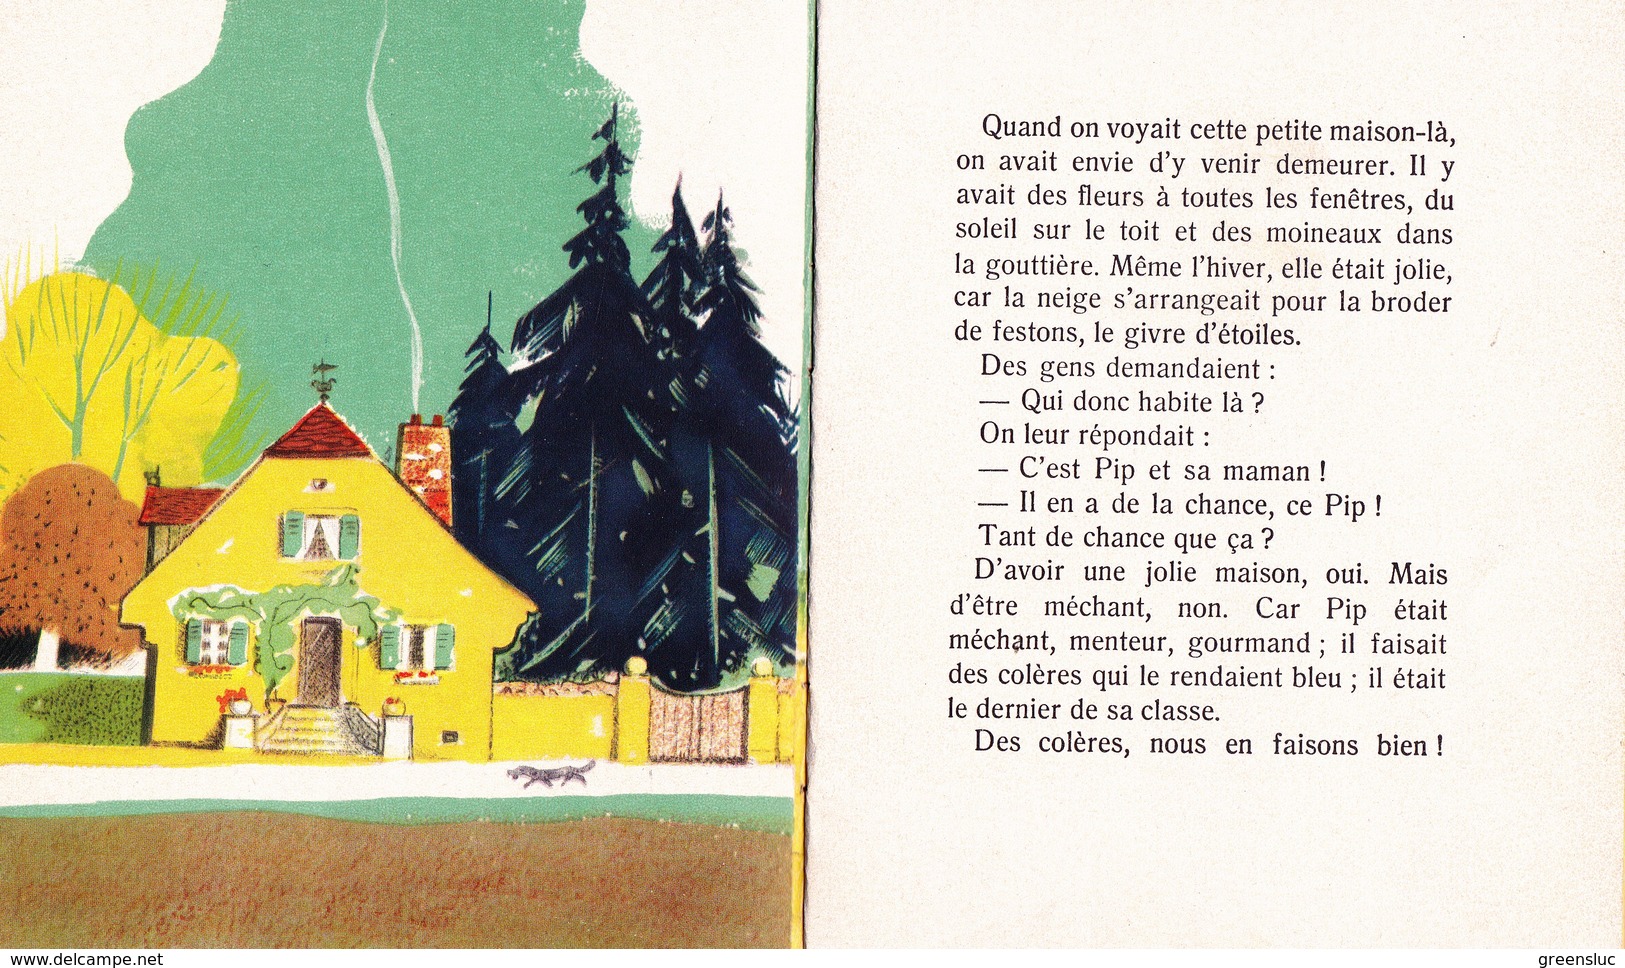 PIP ET SA MAISON - LES PETITS  PERE CASTOR 1951. Flammarion - Sonstige & Ohne Zuordnung